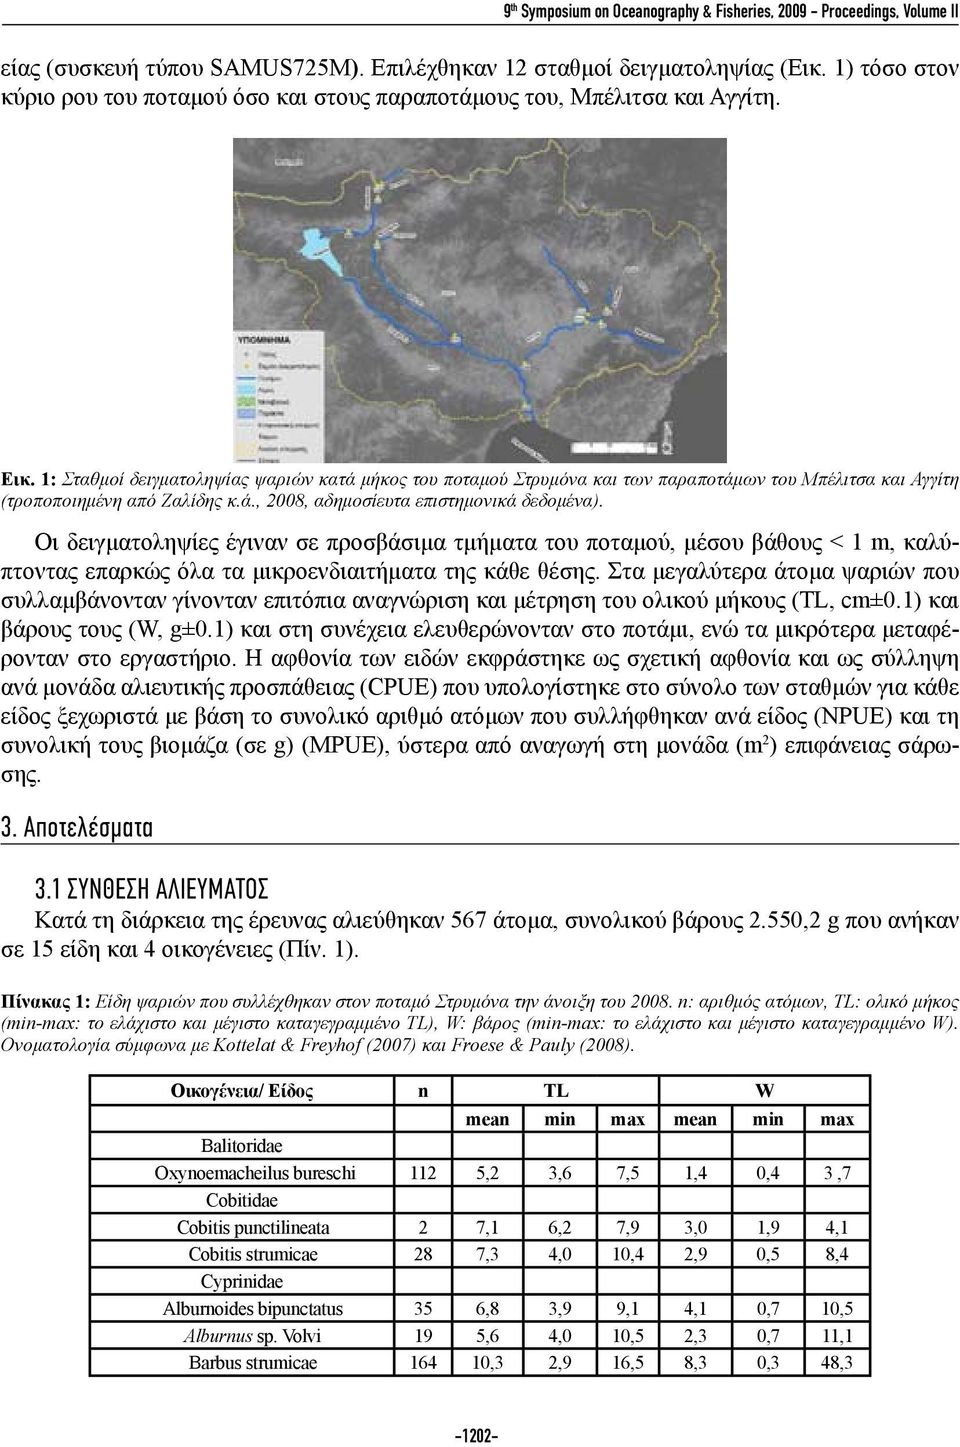 1: Σταθμοί δειγματοληψίας ψαριών κατά μήκος του ποταμού Στρυμόνα και των παραποτάμων του Μπέλιτσα και Αγγίτη (τροποποιημένη από Ζαλίδης κ.ά., 2008, αδημοσίευτα επιστημονικά δεδομένα).